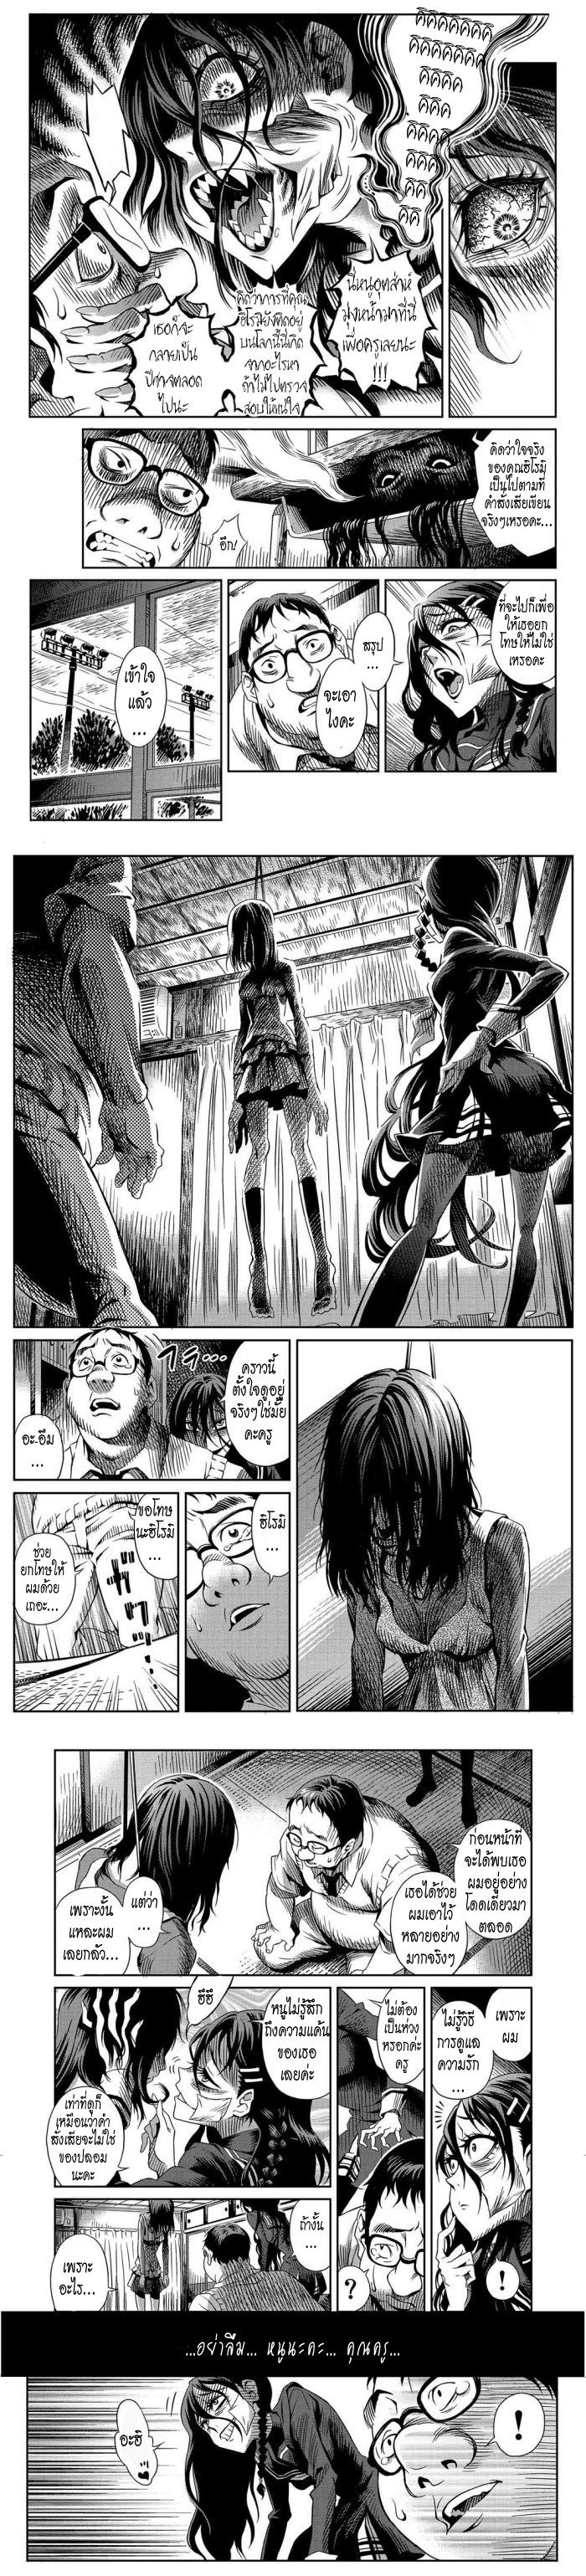 Tsumikumono - หน้า 5